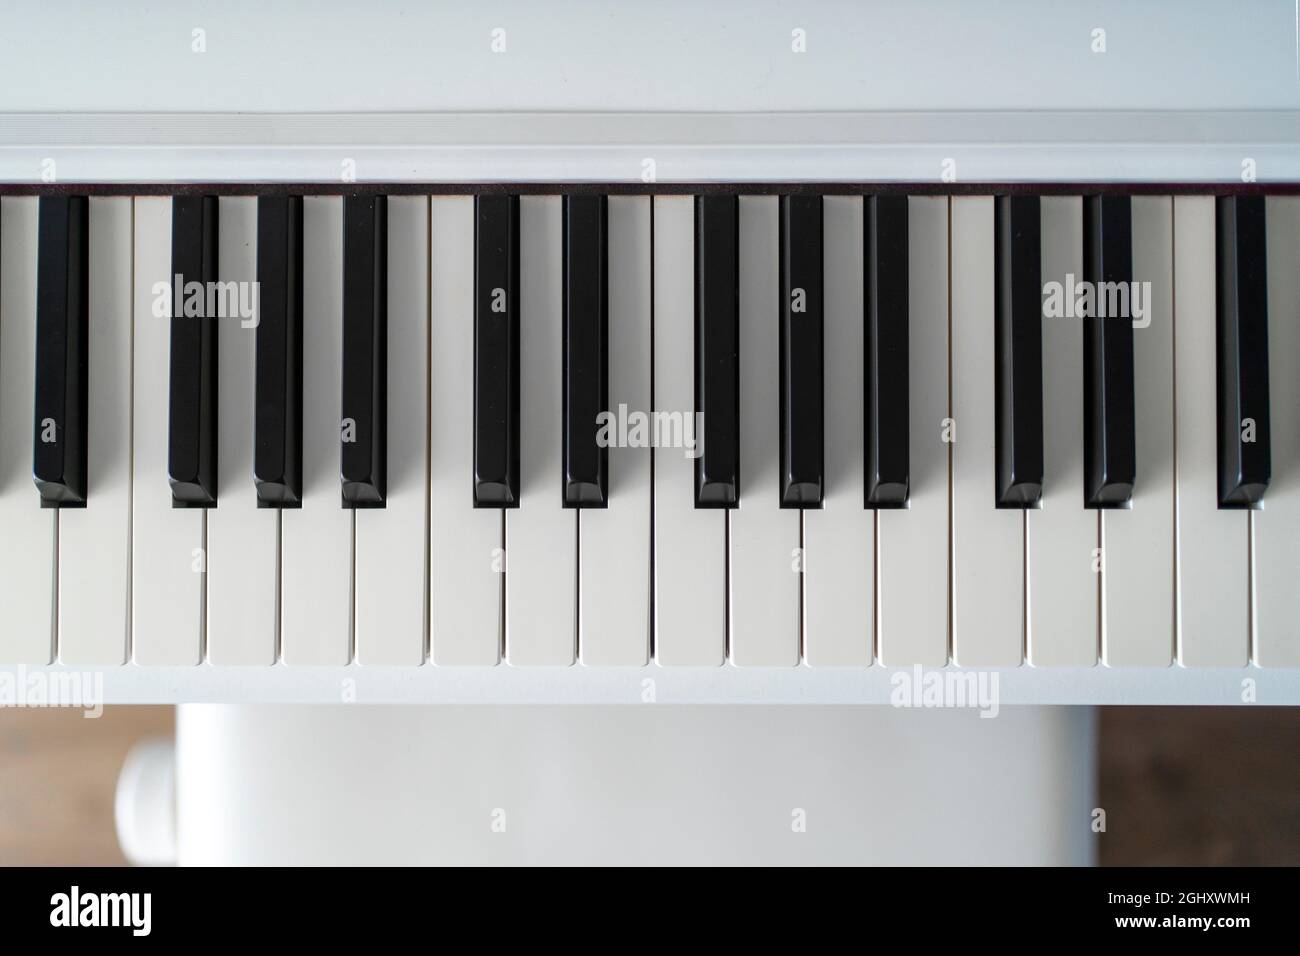 Klaviertastatur. Klassische Musik auf elektronischem Digitalpiano. Blick von der flachen Oberseite auf Holzboden. Wunderschöne weiße Klaviertasten. Stockfoto